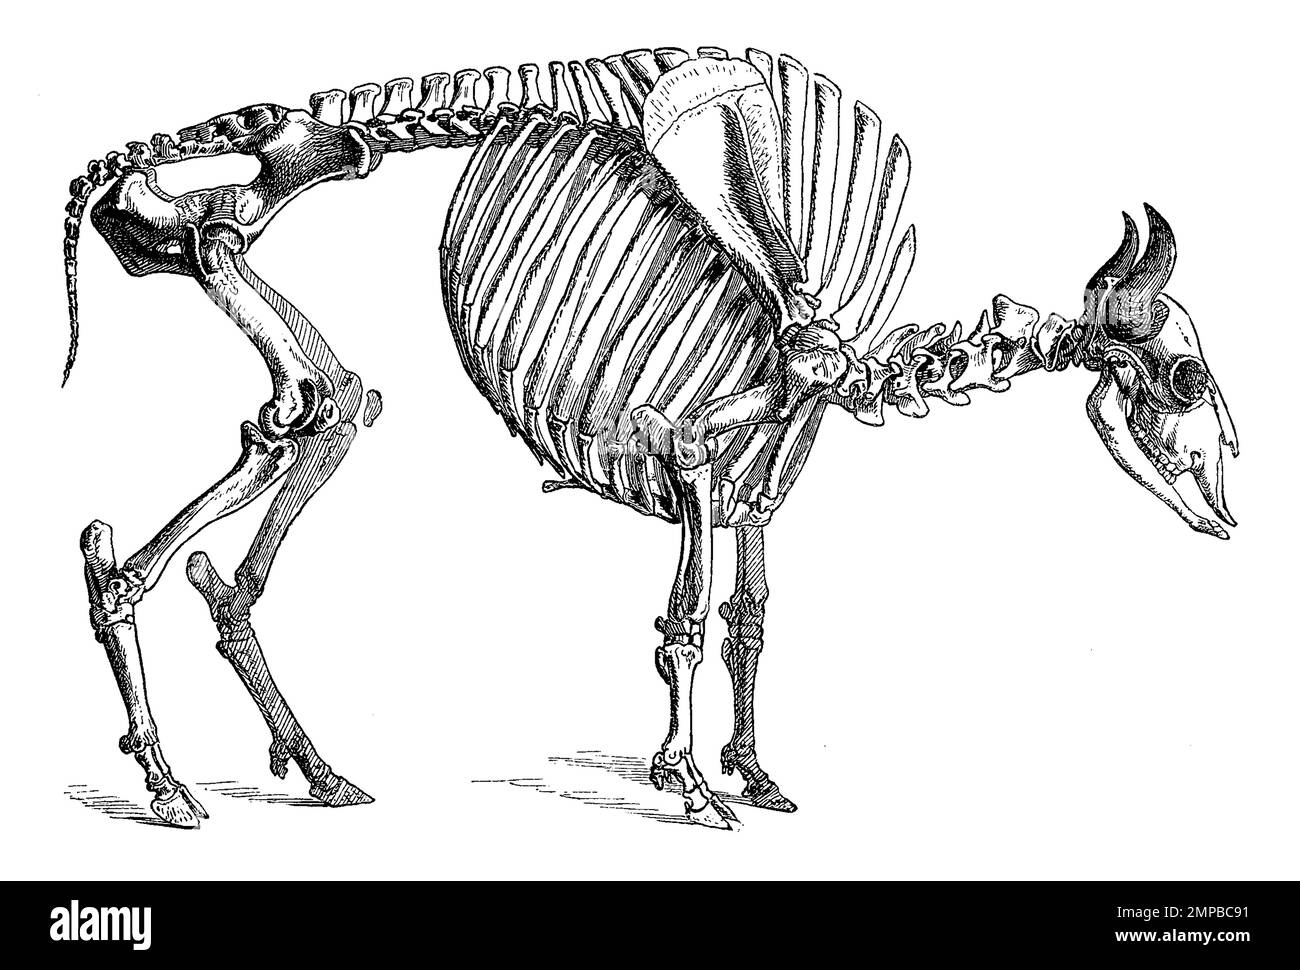 Skelett des Wisent oder Europäische Bison, Bos bonasus, Bison bonasus,, Historisch, digital restaurierte Reproduktion von einer Vorlage aus dem 18. Jahrhundert, Stock Photo